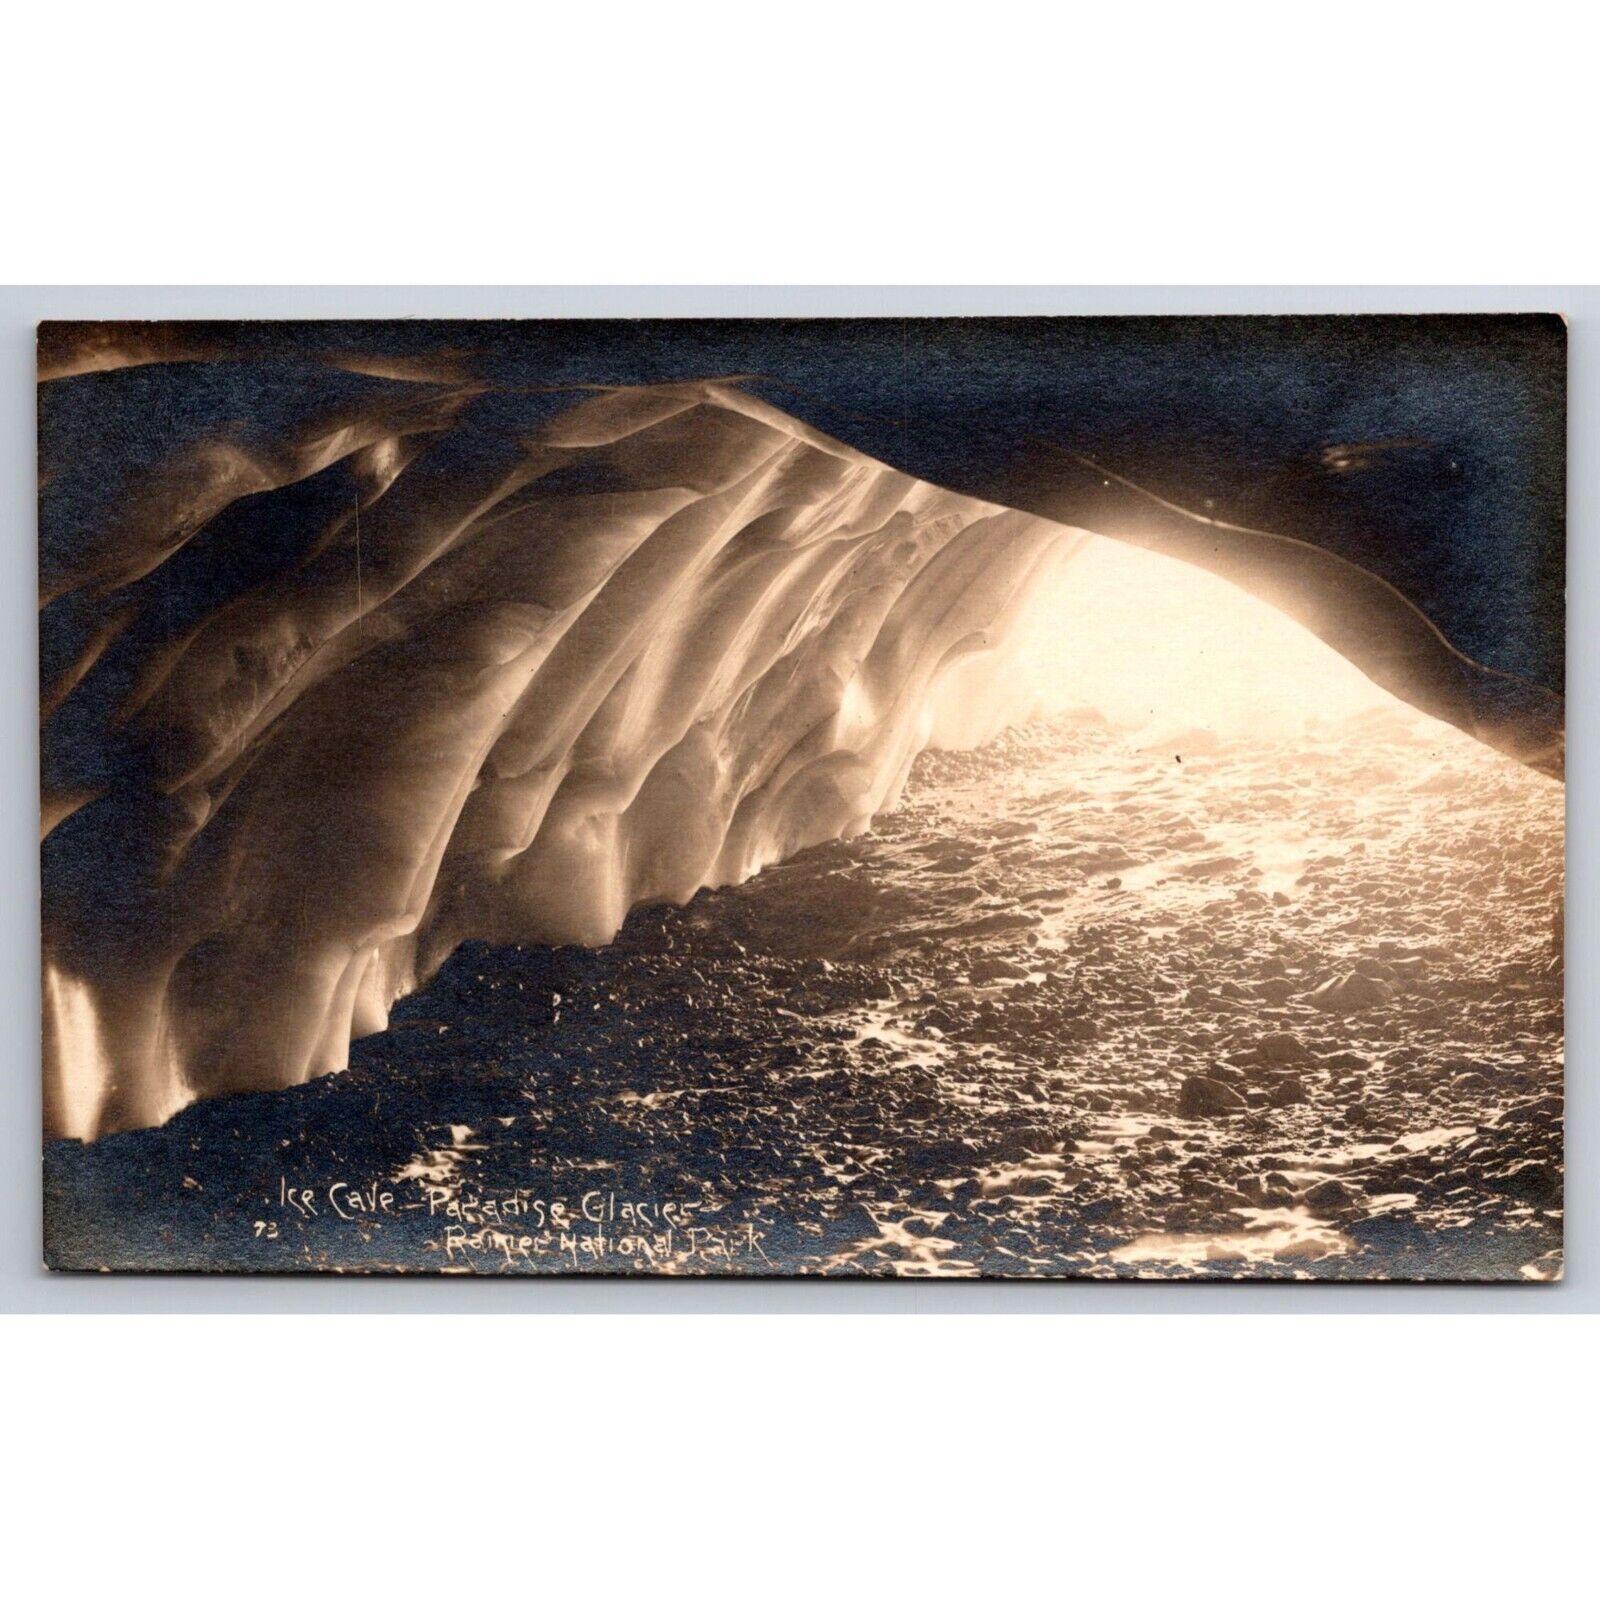 Postcard Ice Cave Paradise Glacier Rainier National Park RPPC Antique c1910 0818